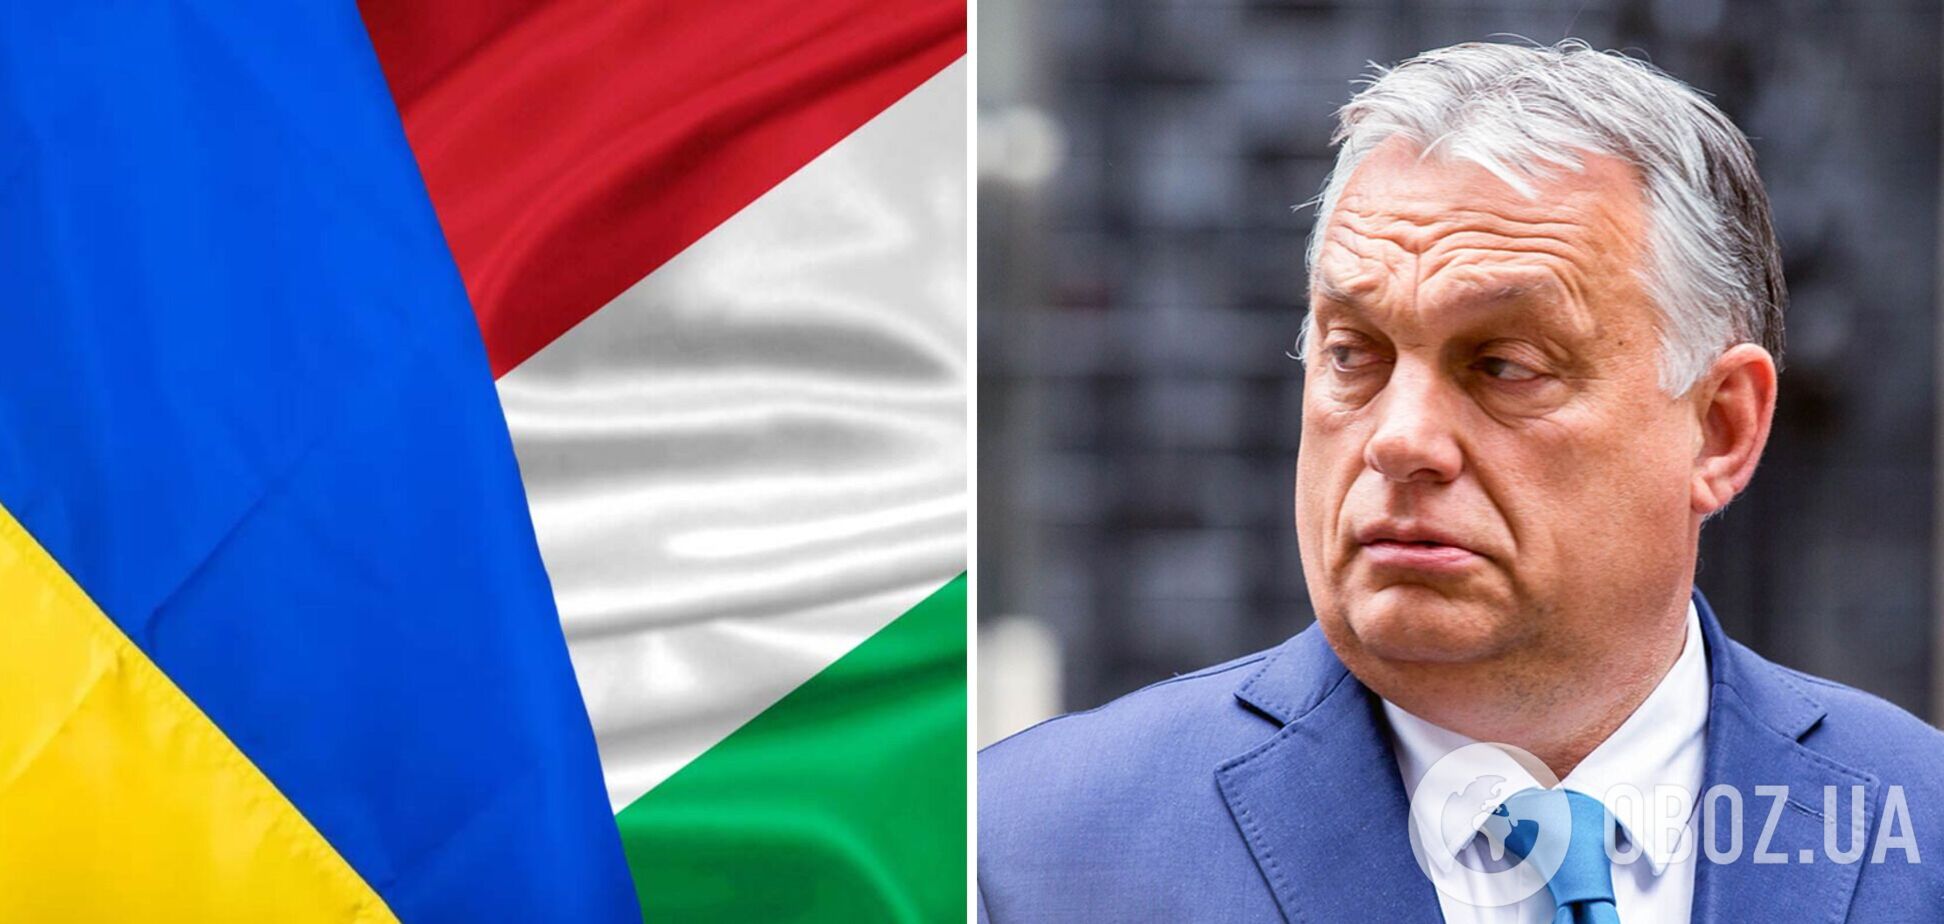  Нужны ли вообще объединенной Европе Виктор Орбан и Петер Сийярто?